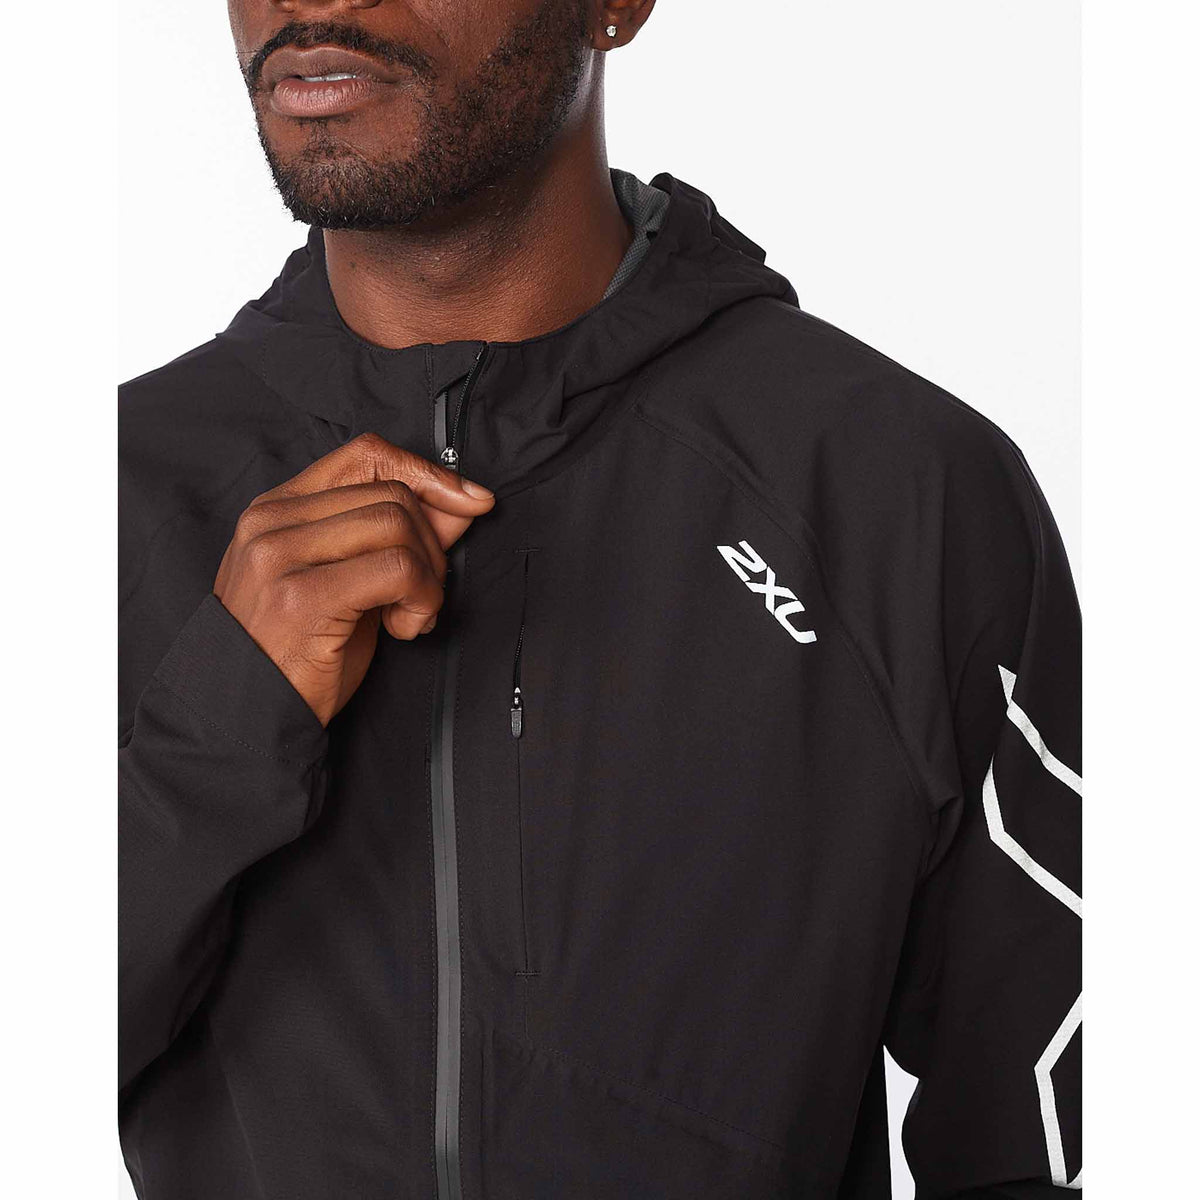 2XU manteau imperméable Light Speed WP Jacket pour homme Noir/Argent zip